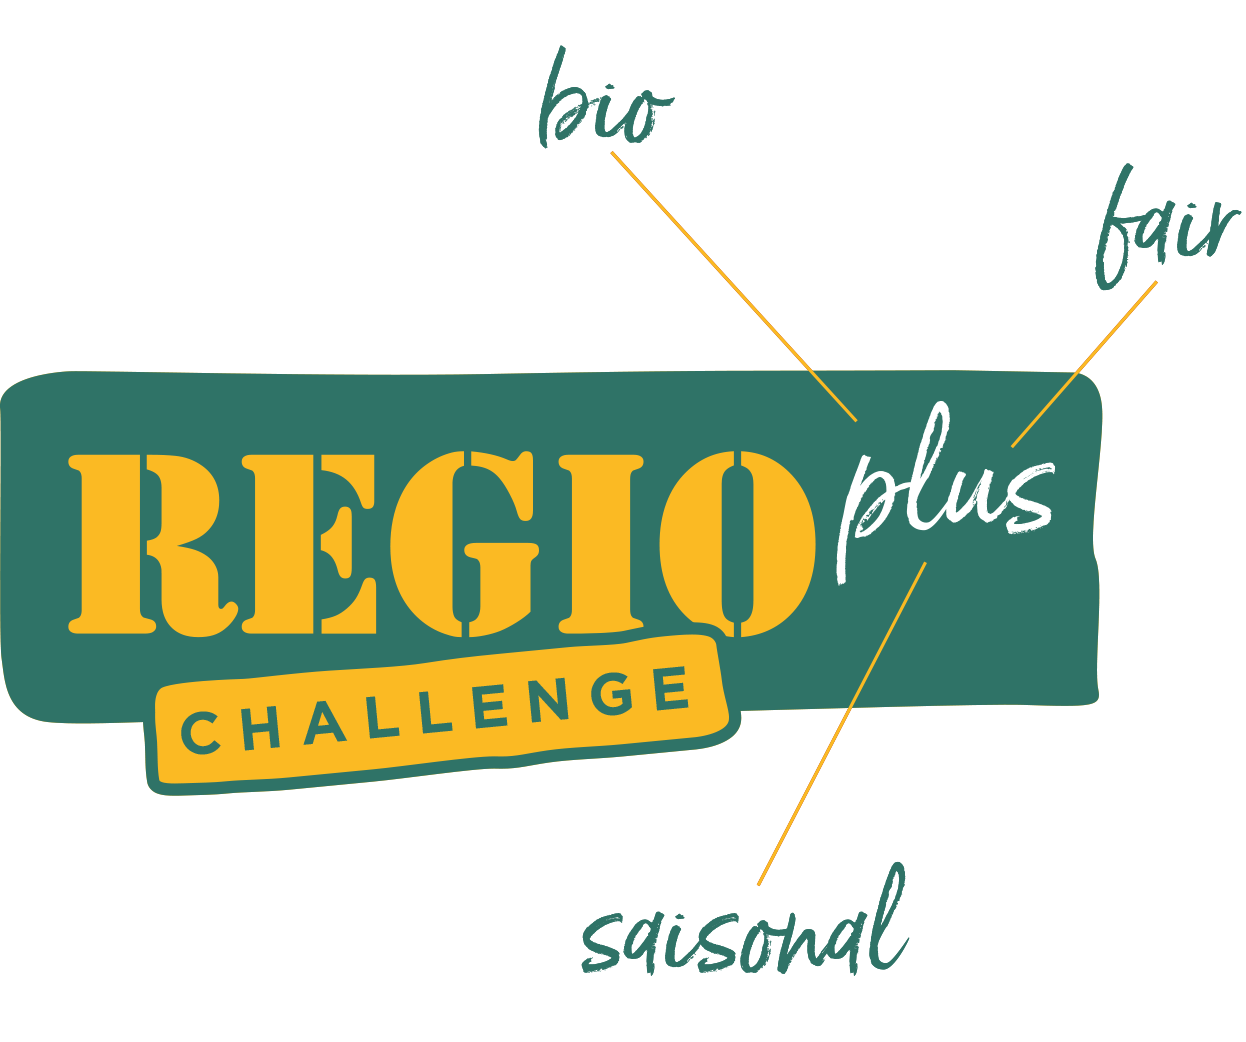 Regioplus Challenge